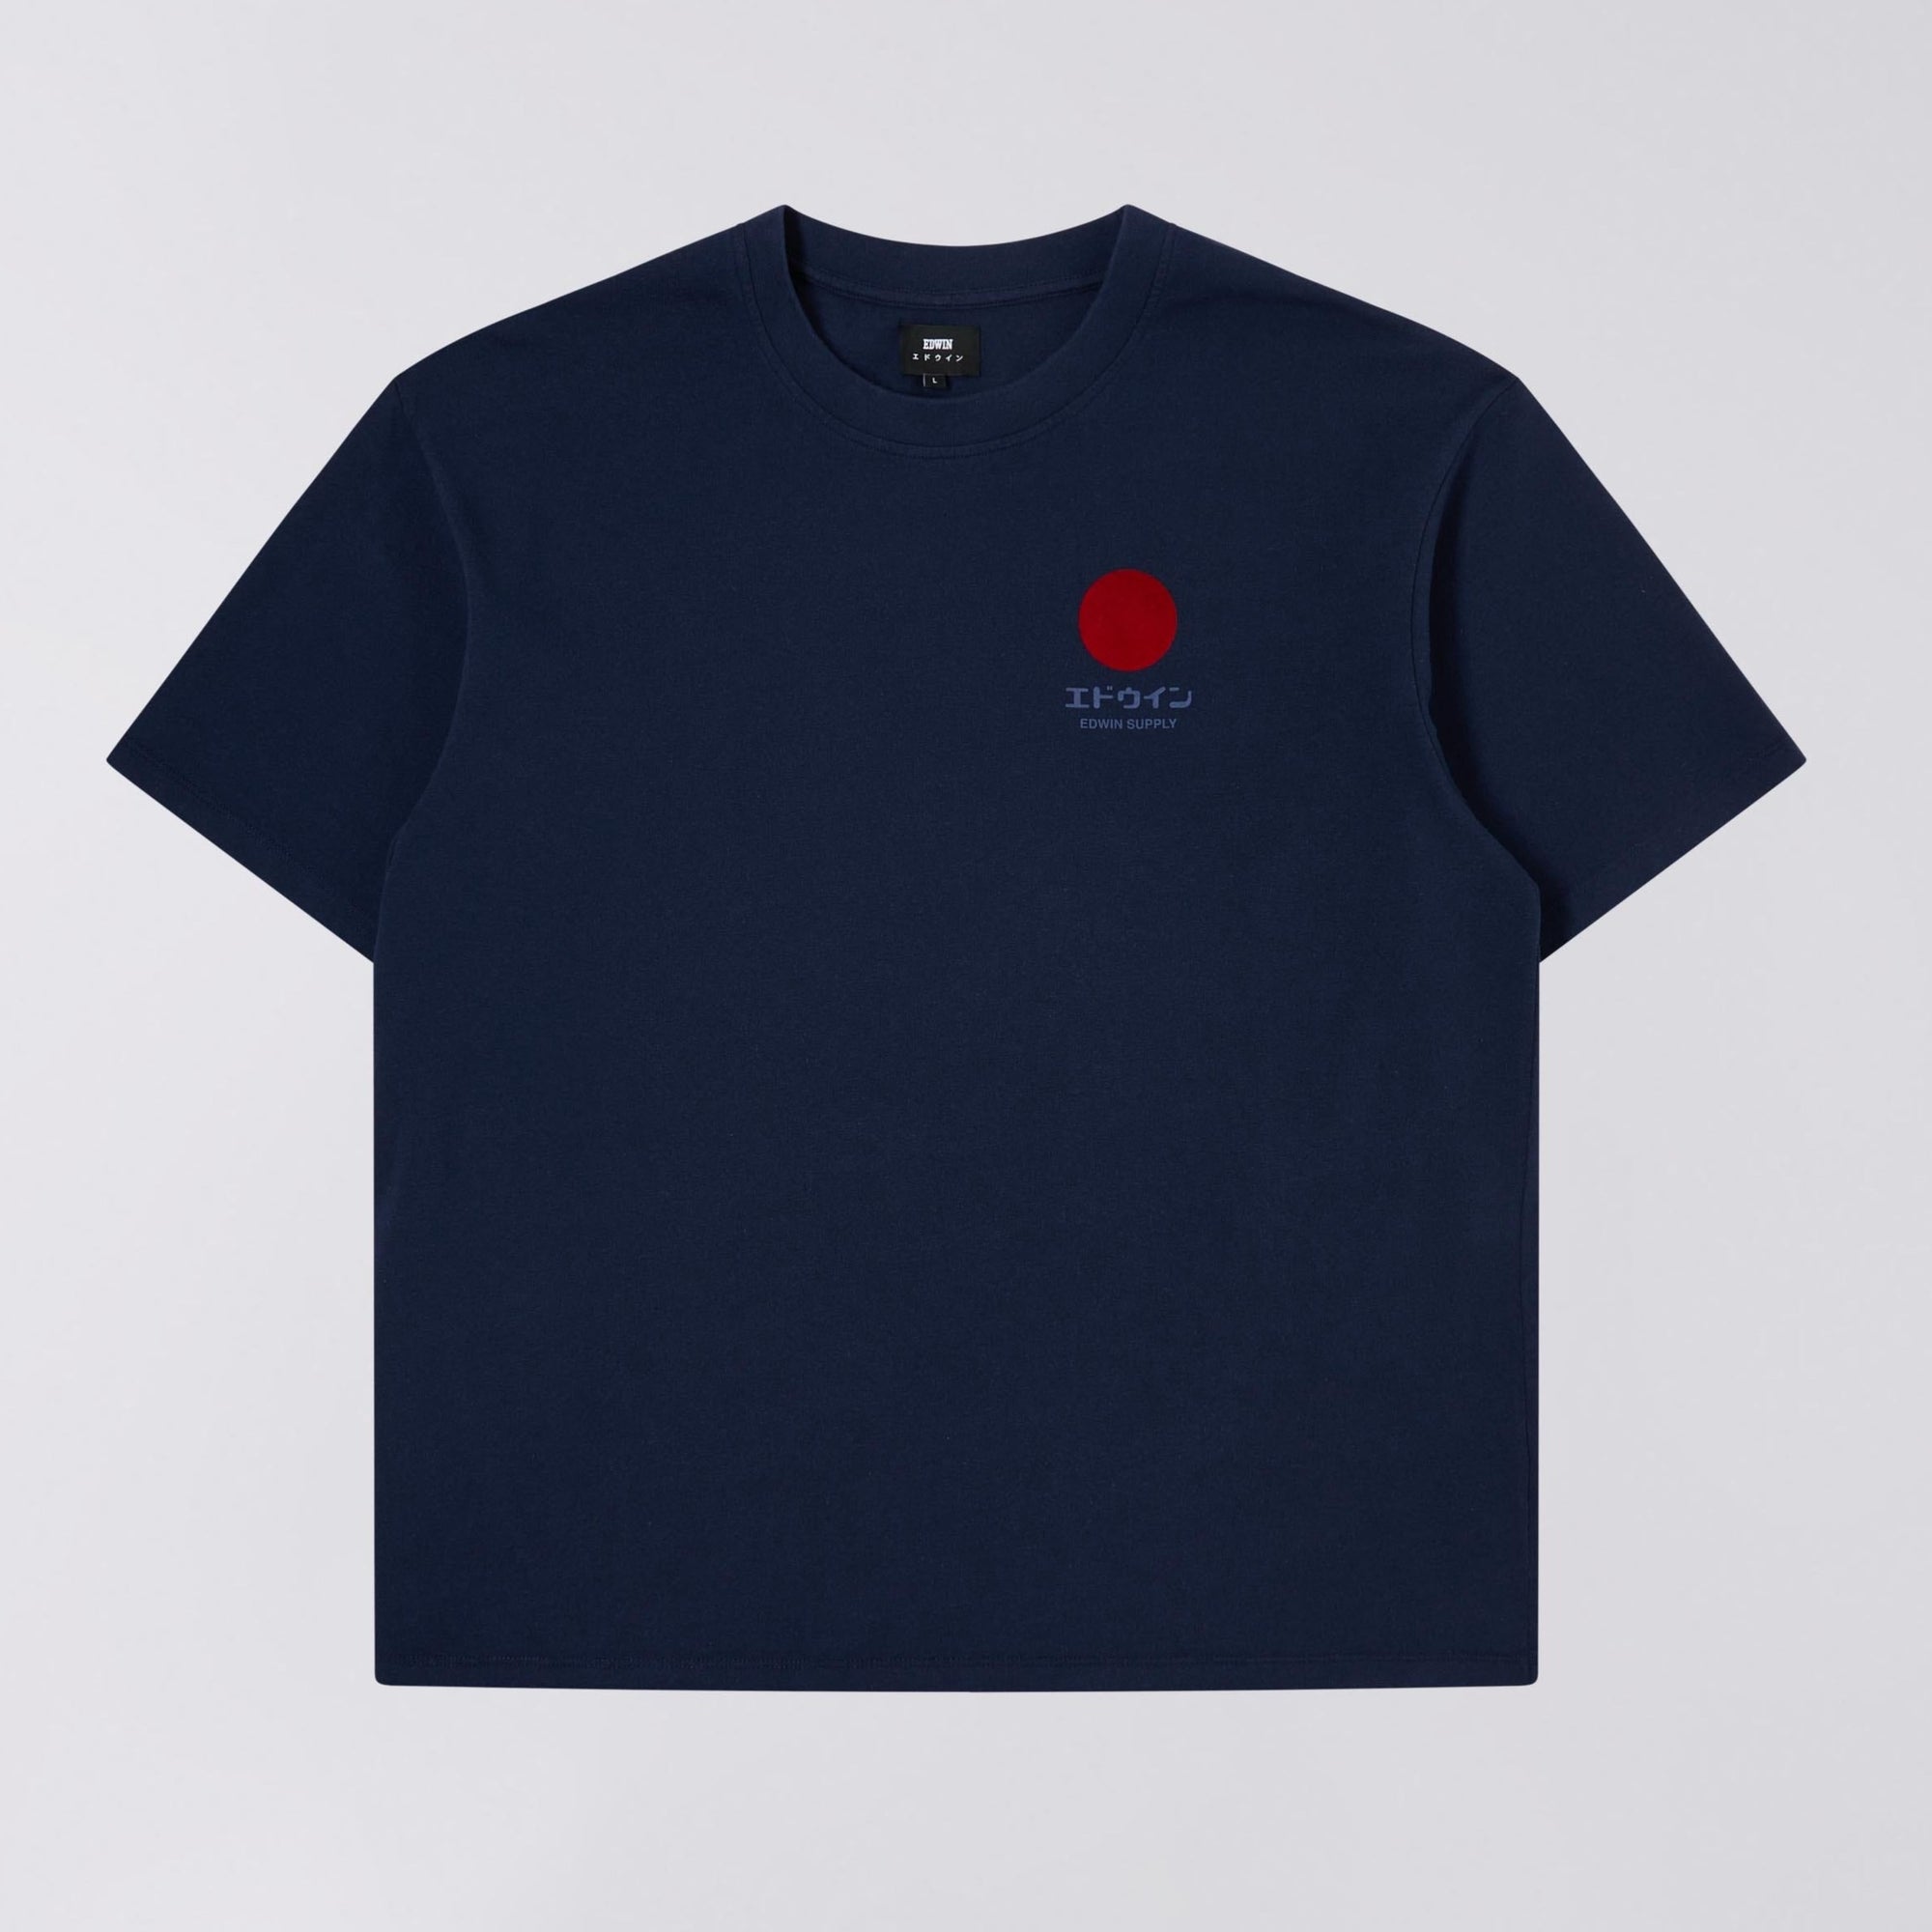 Edwin Japanese Sun Supply T-Shirt - Maritime Blue